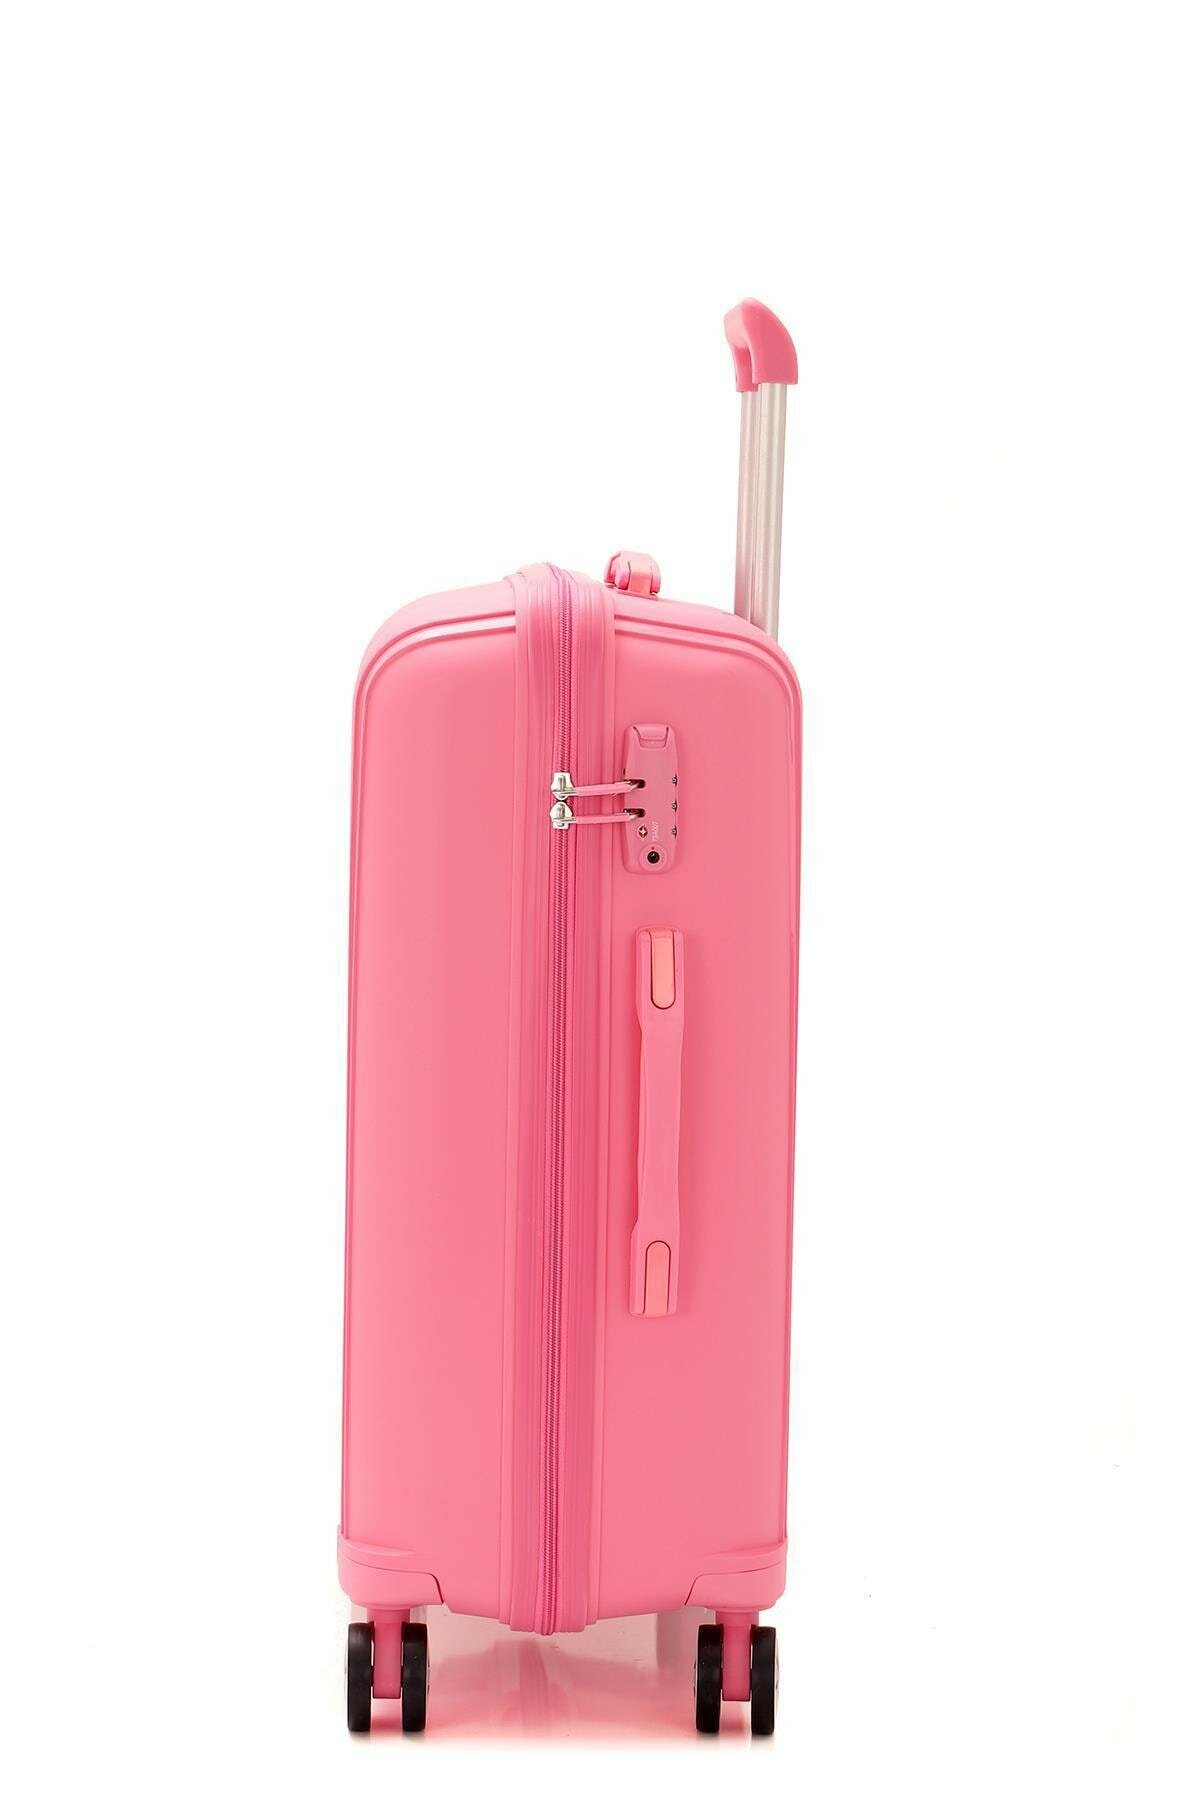 Средний чемодан из полипропилена MCS V305 M PINK! Для 18 кг! - 4